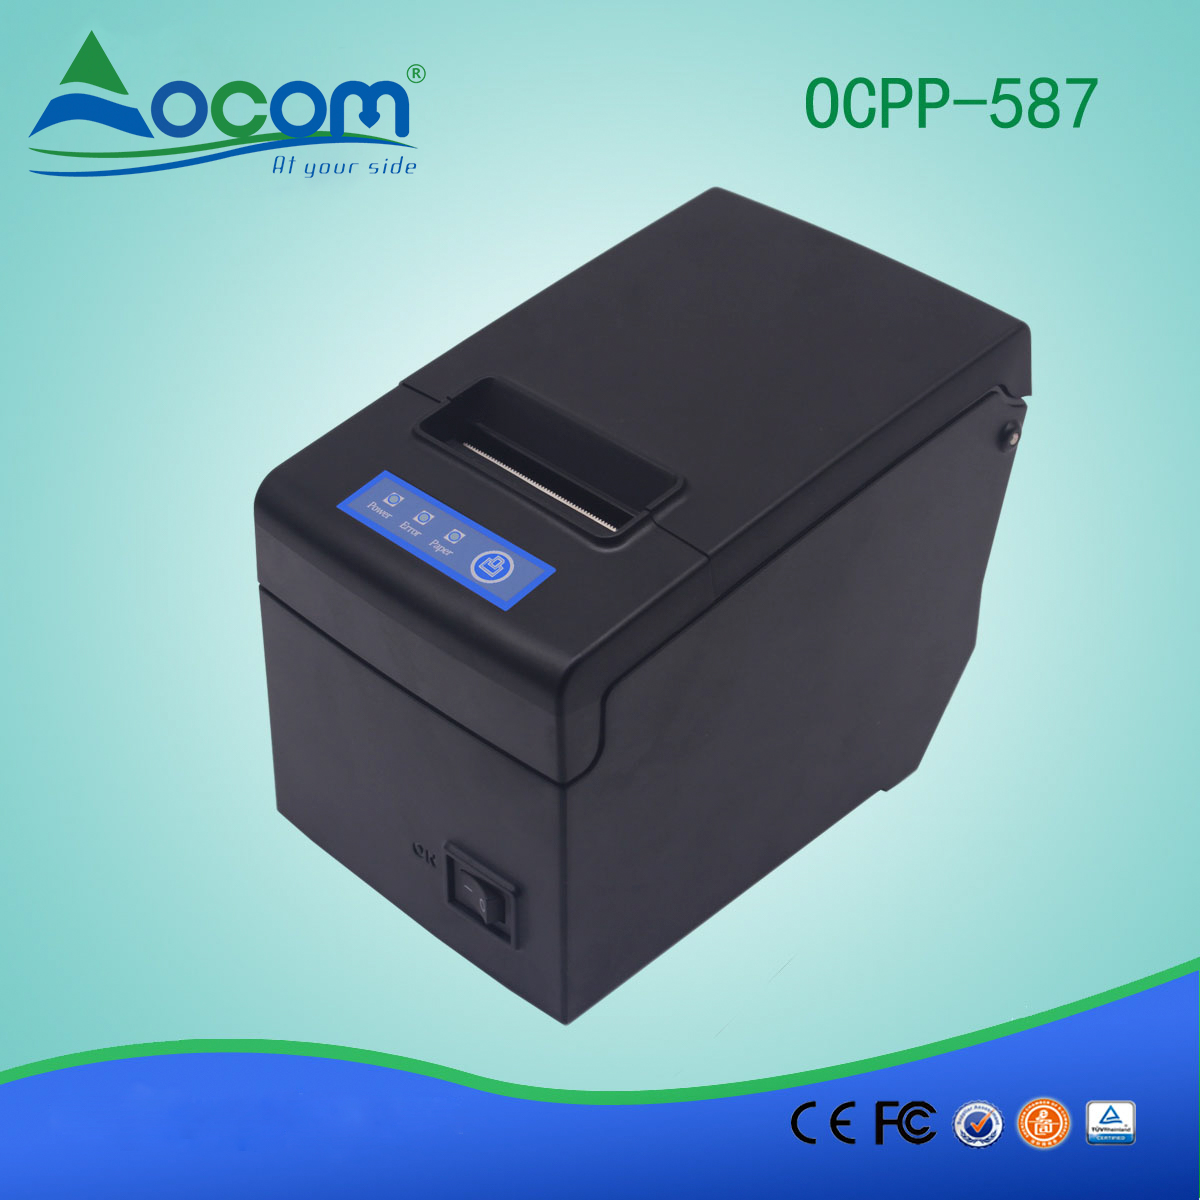 Impresora de recibos térmica de 58 mm con soporte de papel grande OCPP-587-L LAN / Puerto Ethernet